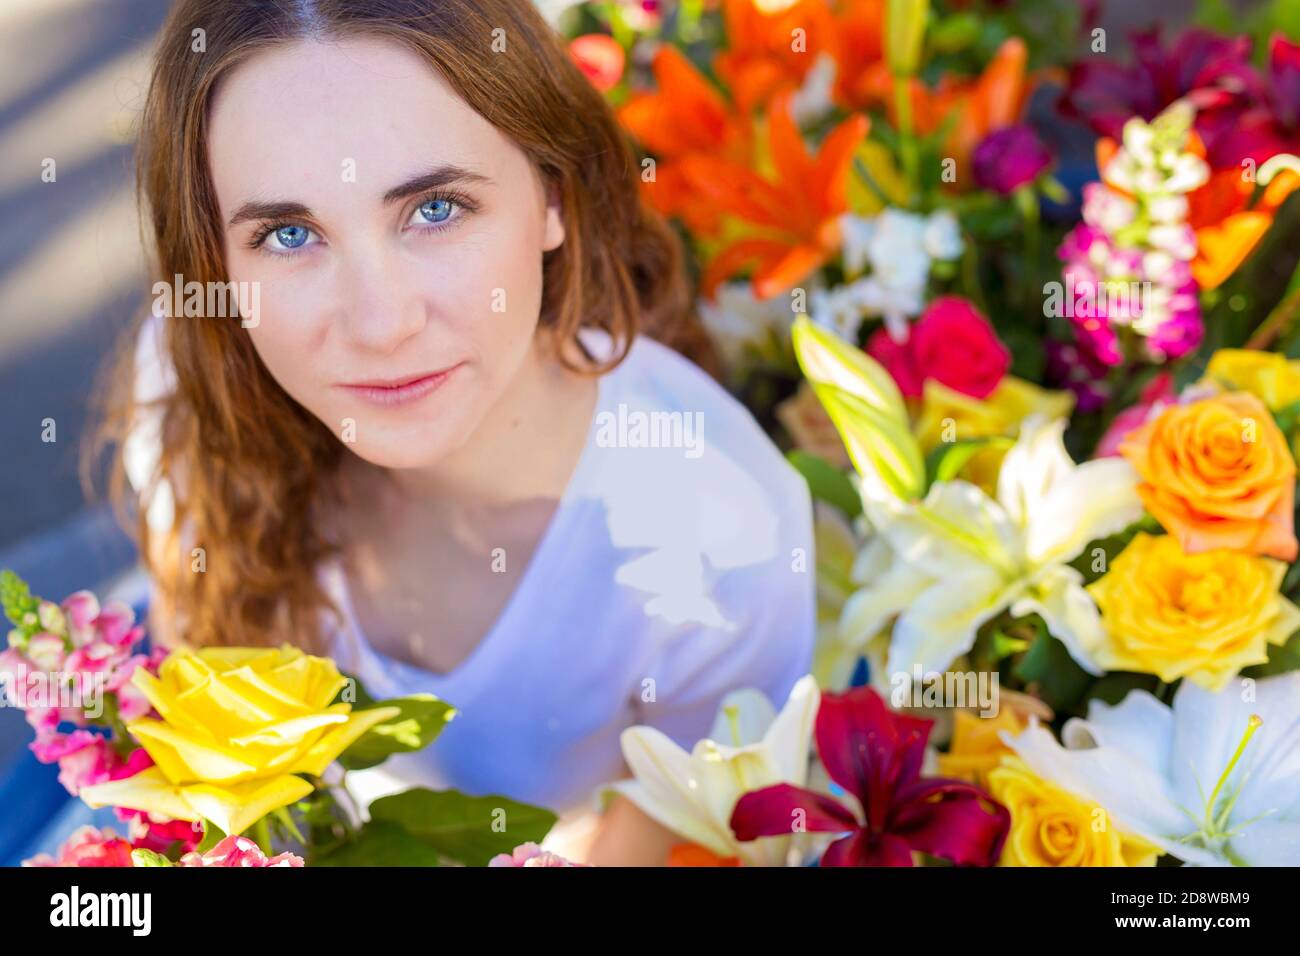 Nahaufnahme der schönen ruhigen jungen Frau mit ruhigen Ausdruck in Ein weißes Hemd umgeben von reichlich bunten Blumenblumen Stockfoto